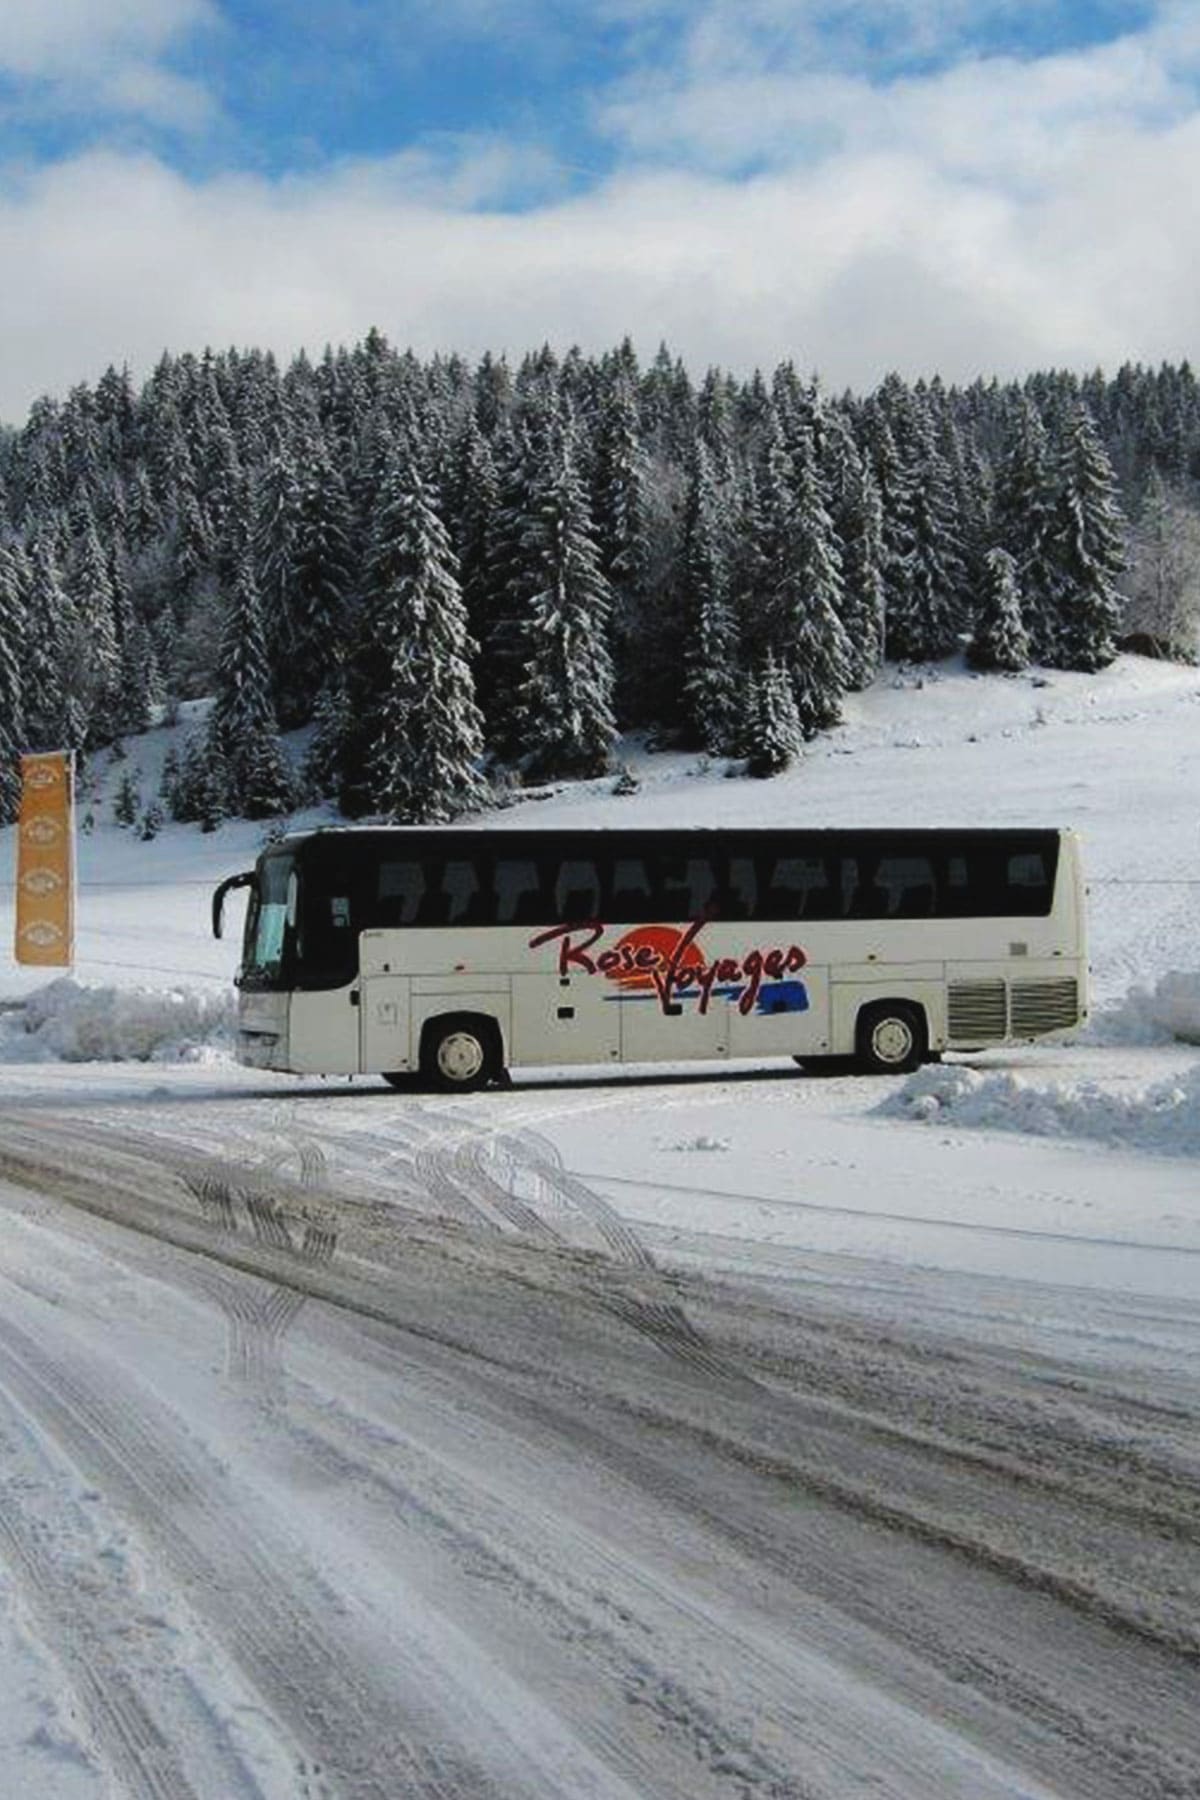 bus voyage rose côté logo